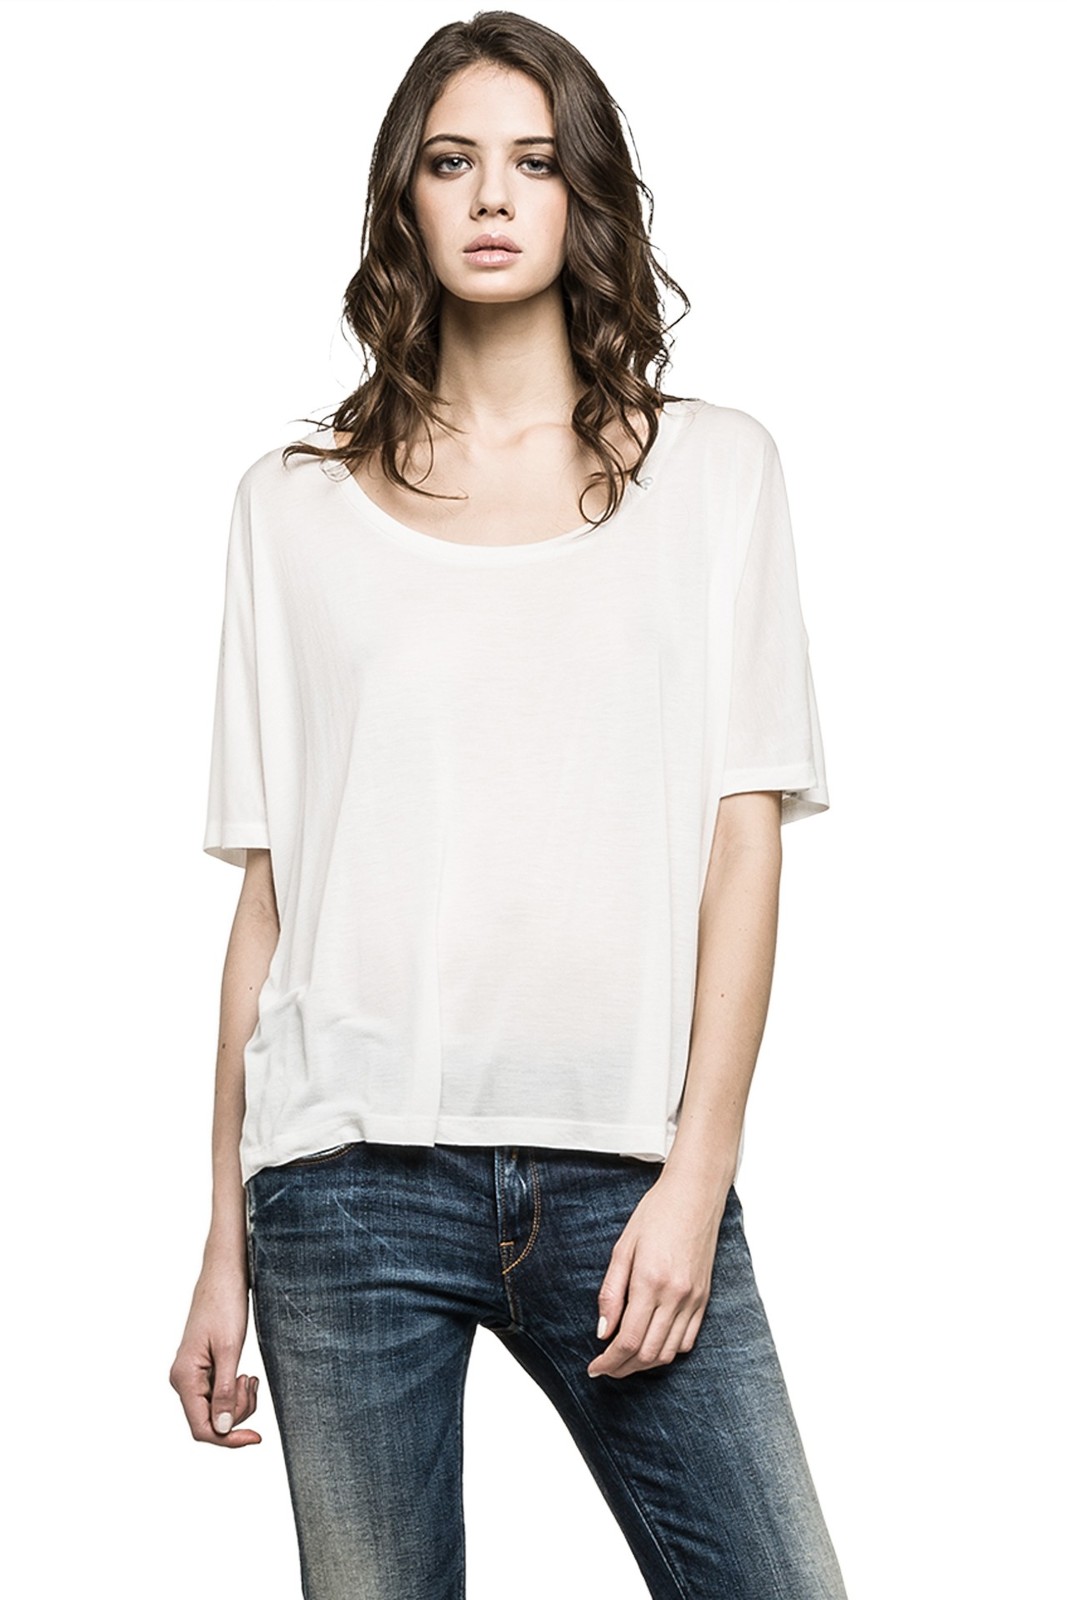 Replay női fehér dzsörzé túlméretezett póló fotója